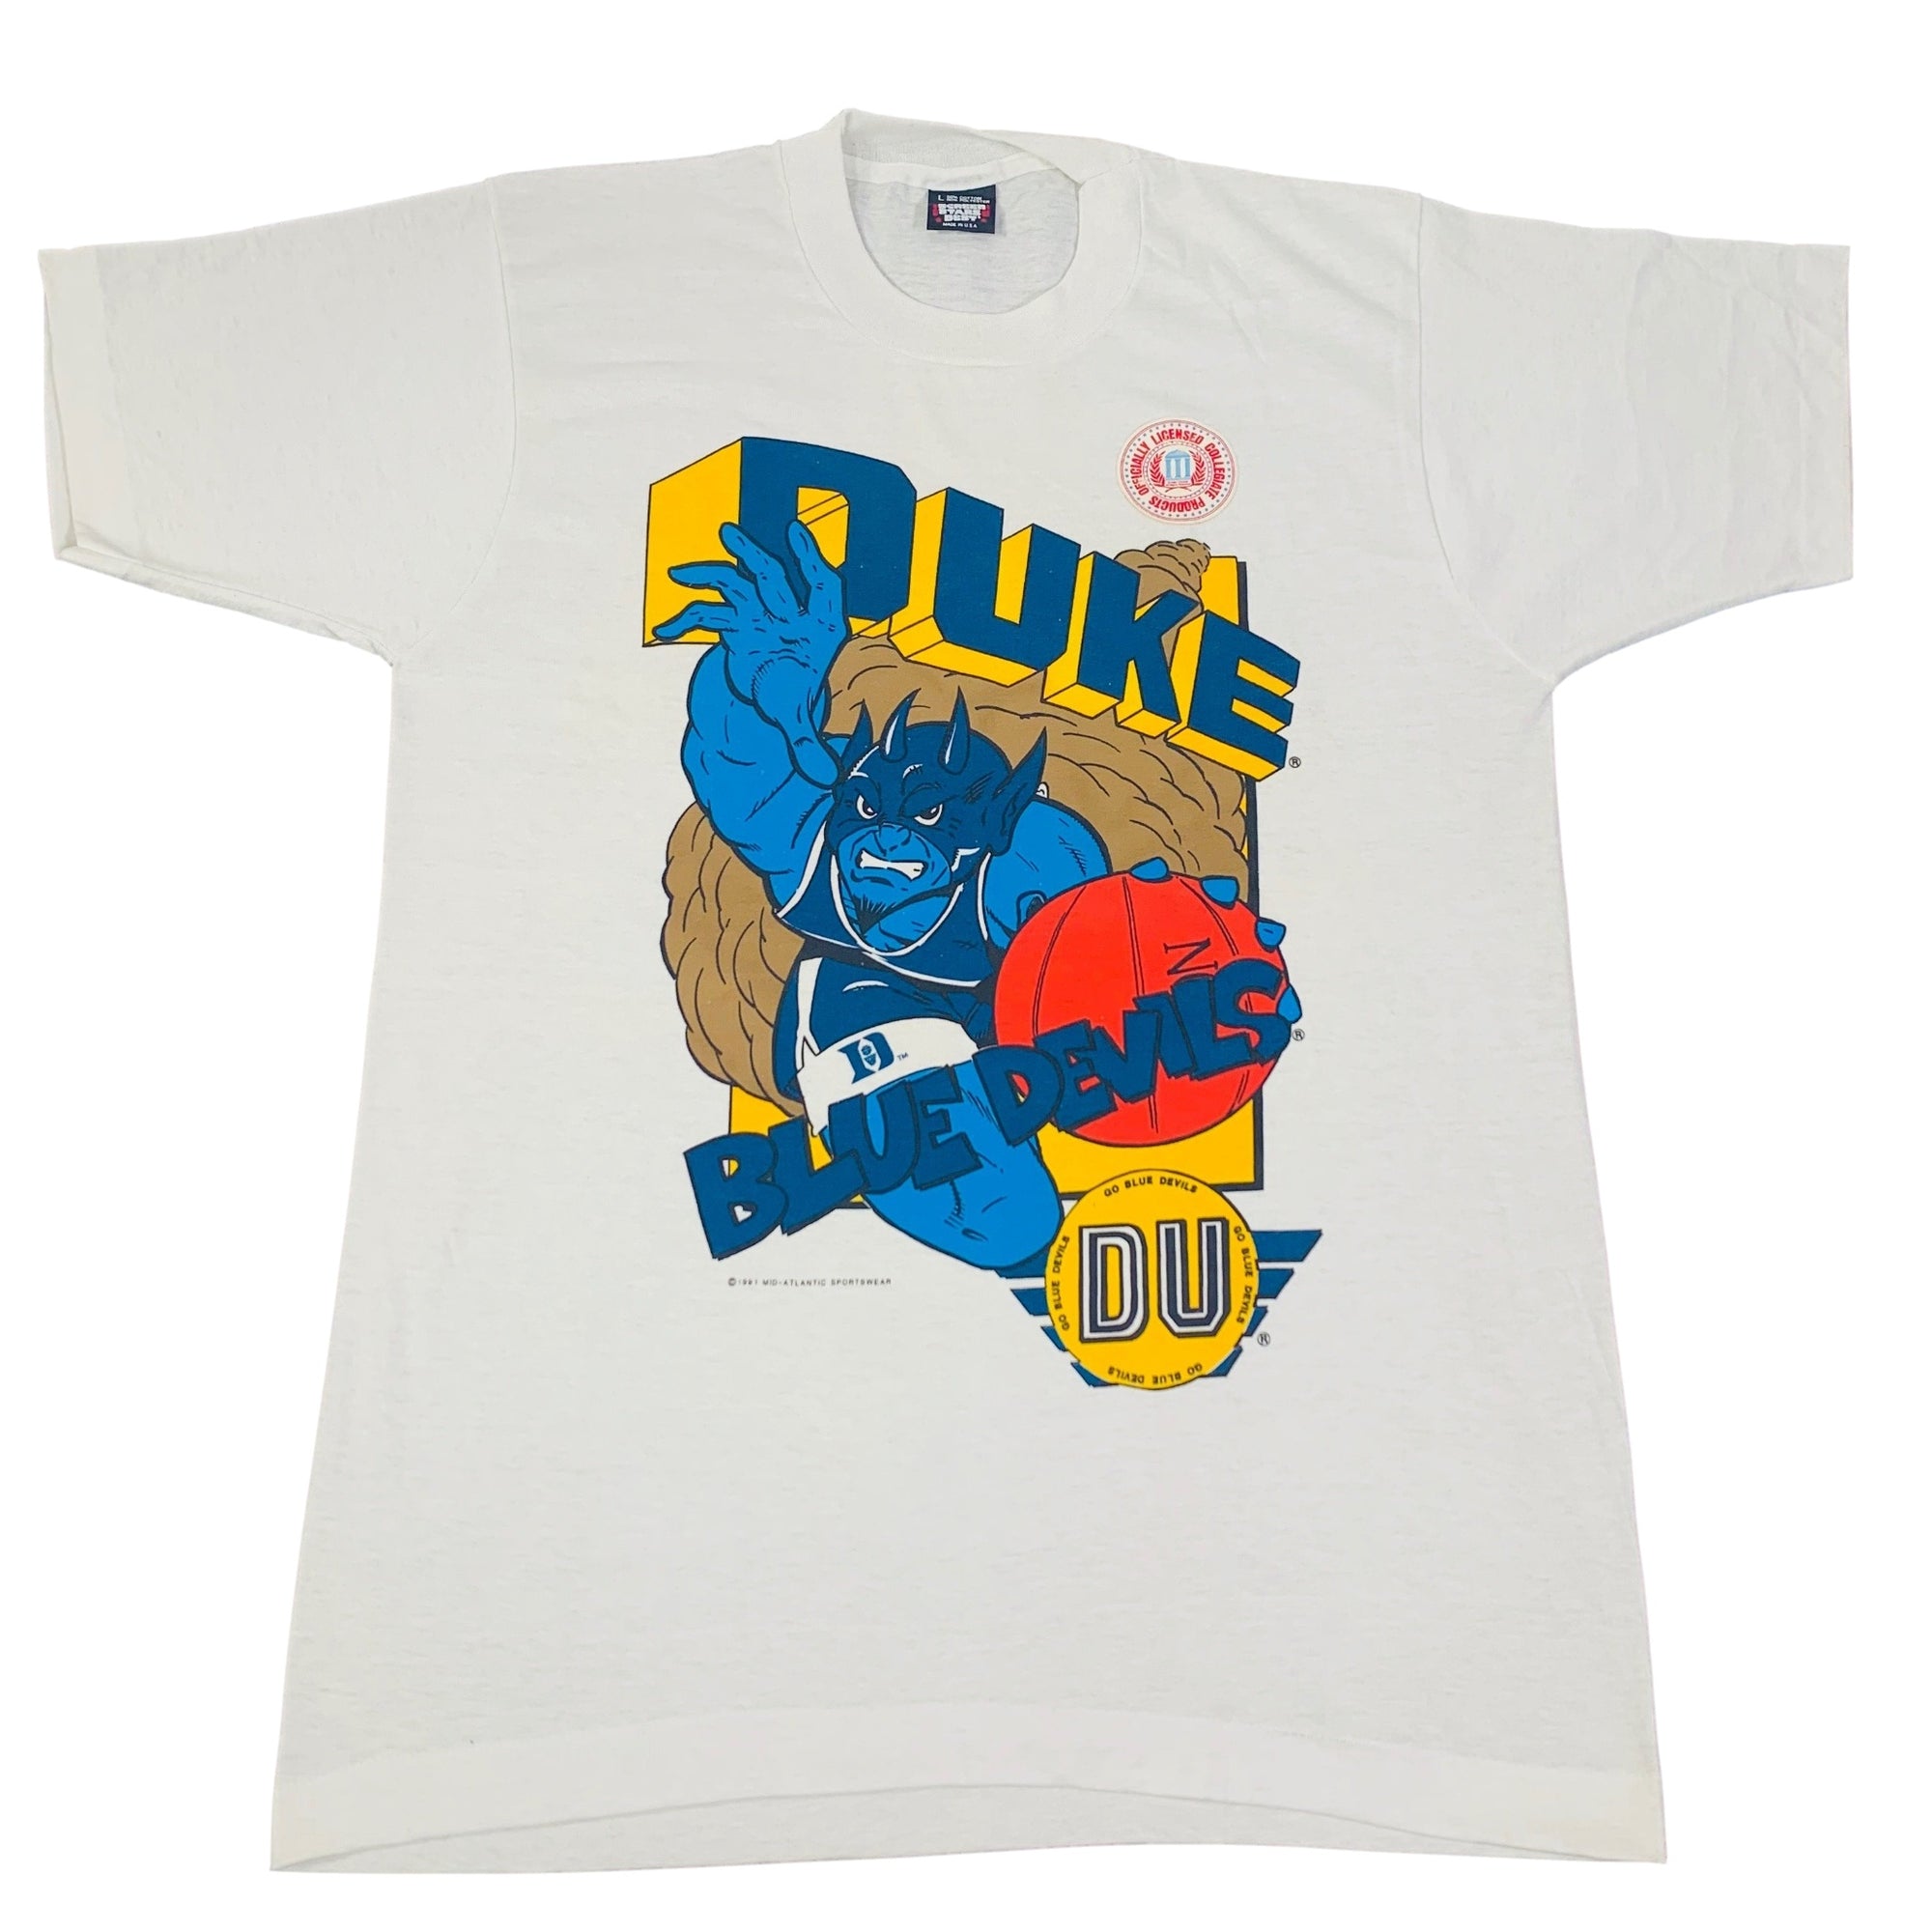 Vintage Duke University "Blue Devils" T-Shirt - jointcustodydc